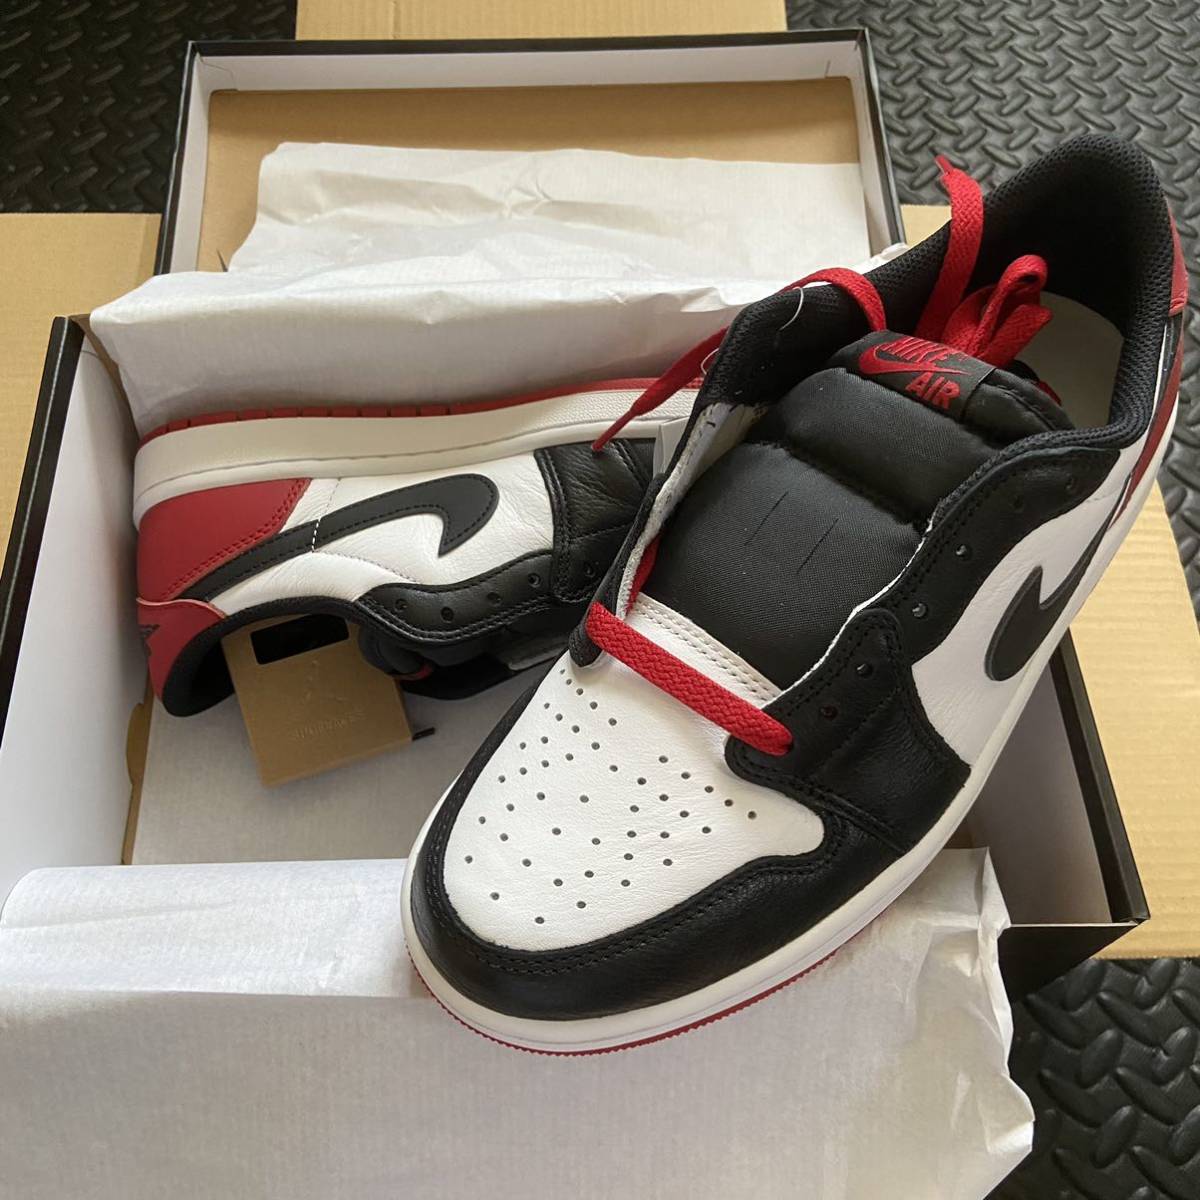 ◆未使用新品 27㎝ Nike Air Jordan 1 Low OG “Black Toe” エアジョーダン1 レトロ ロー オージー “ブラックトゥ”◆